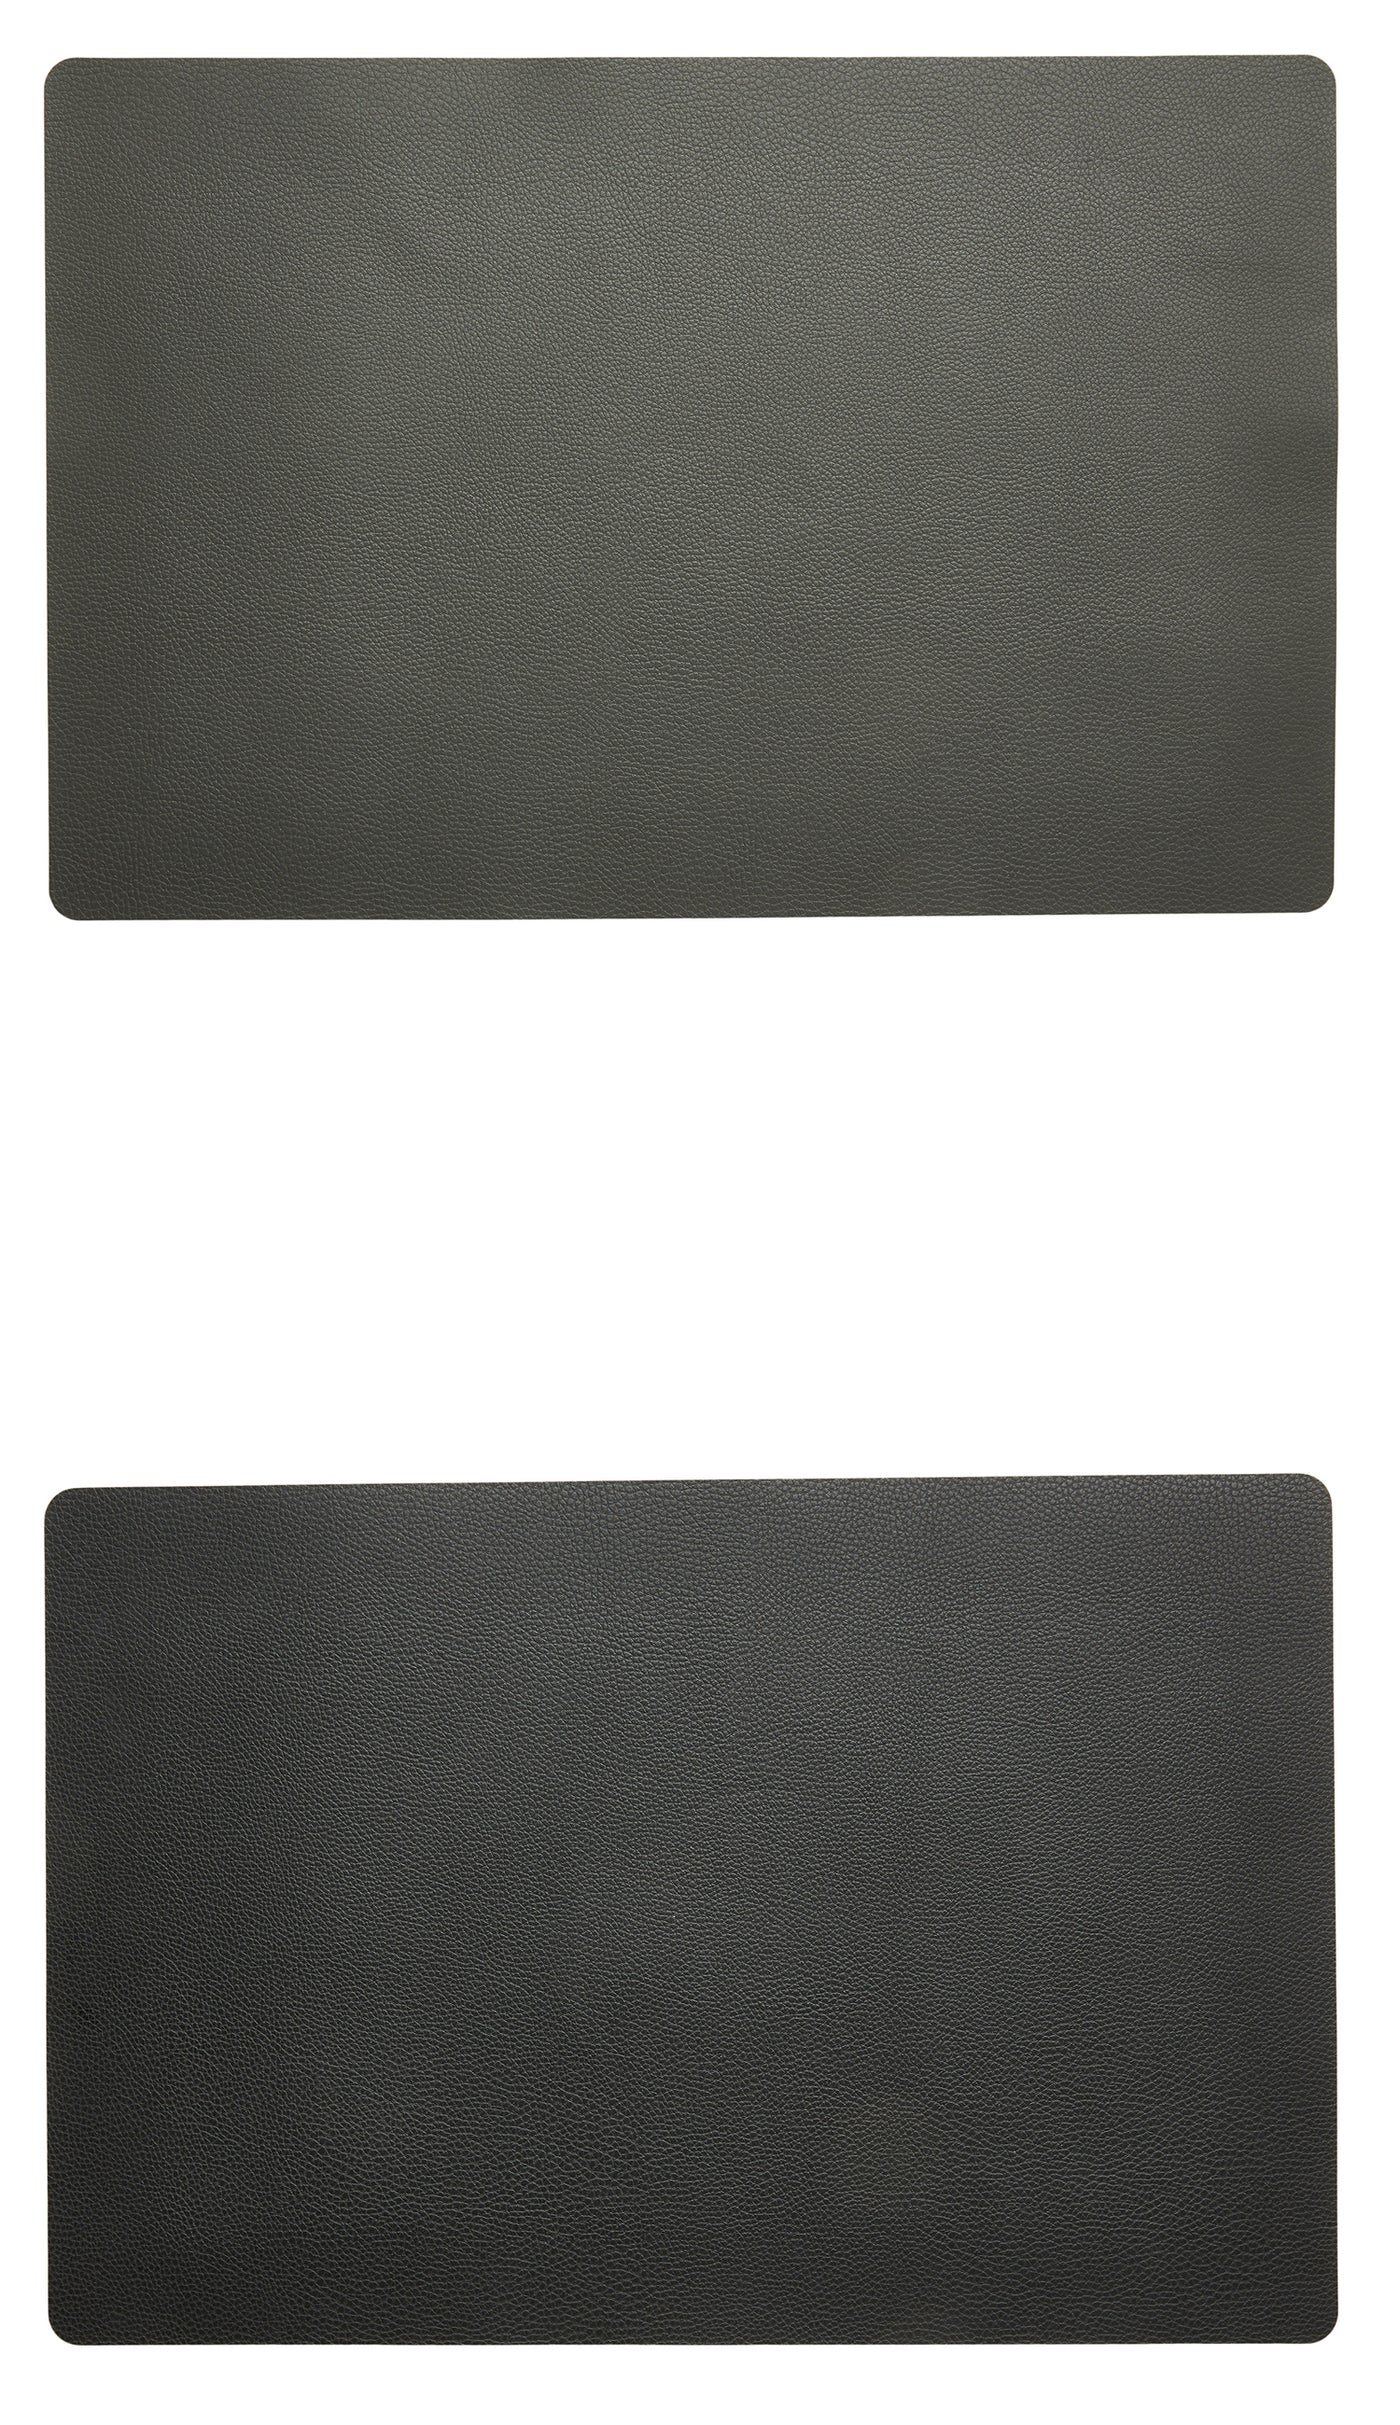 Dacore - Dækkeserviet PU soft 30x45 cm - mellem grå/sort vendbar